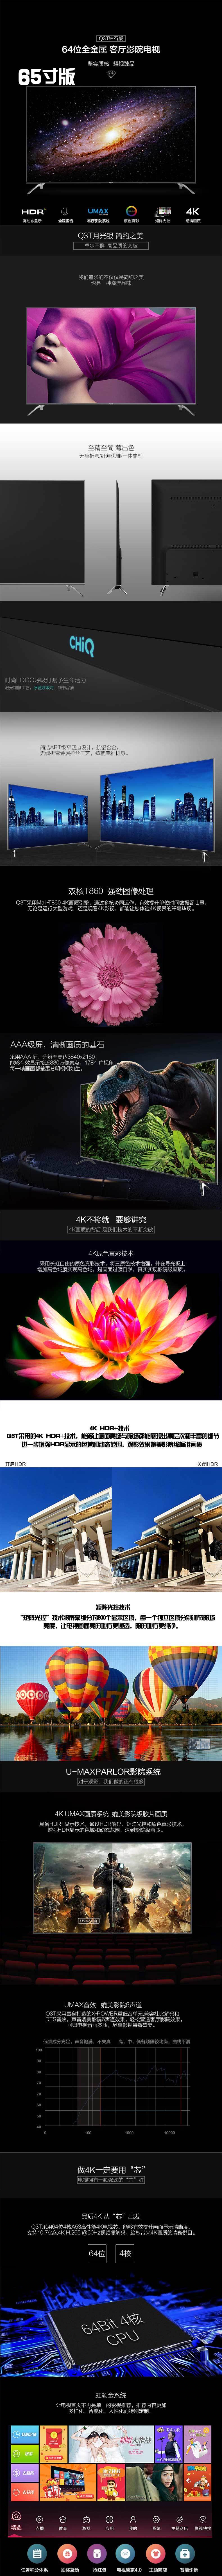 【四川惠民】长虹/CHONGHONG 65Q3T 65寸4K语音智能网络电视HDR液晶平板LED